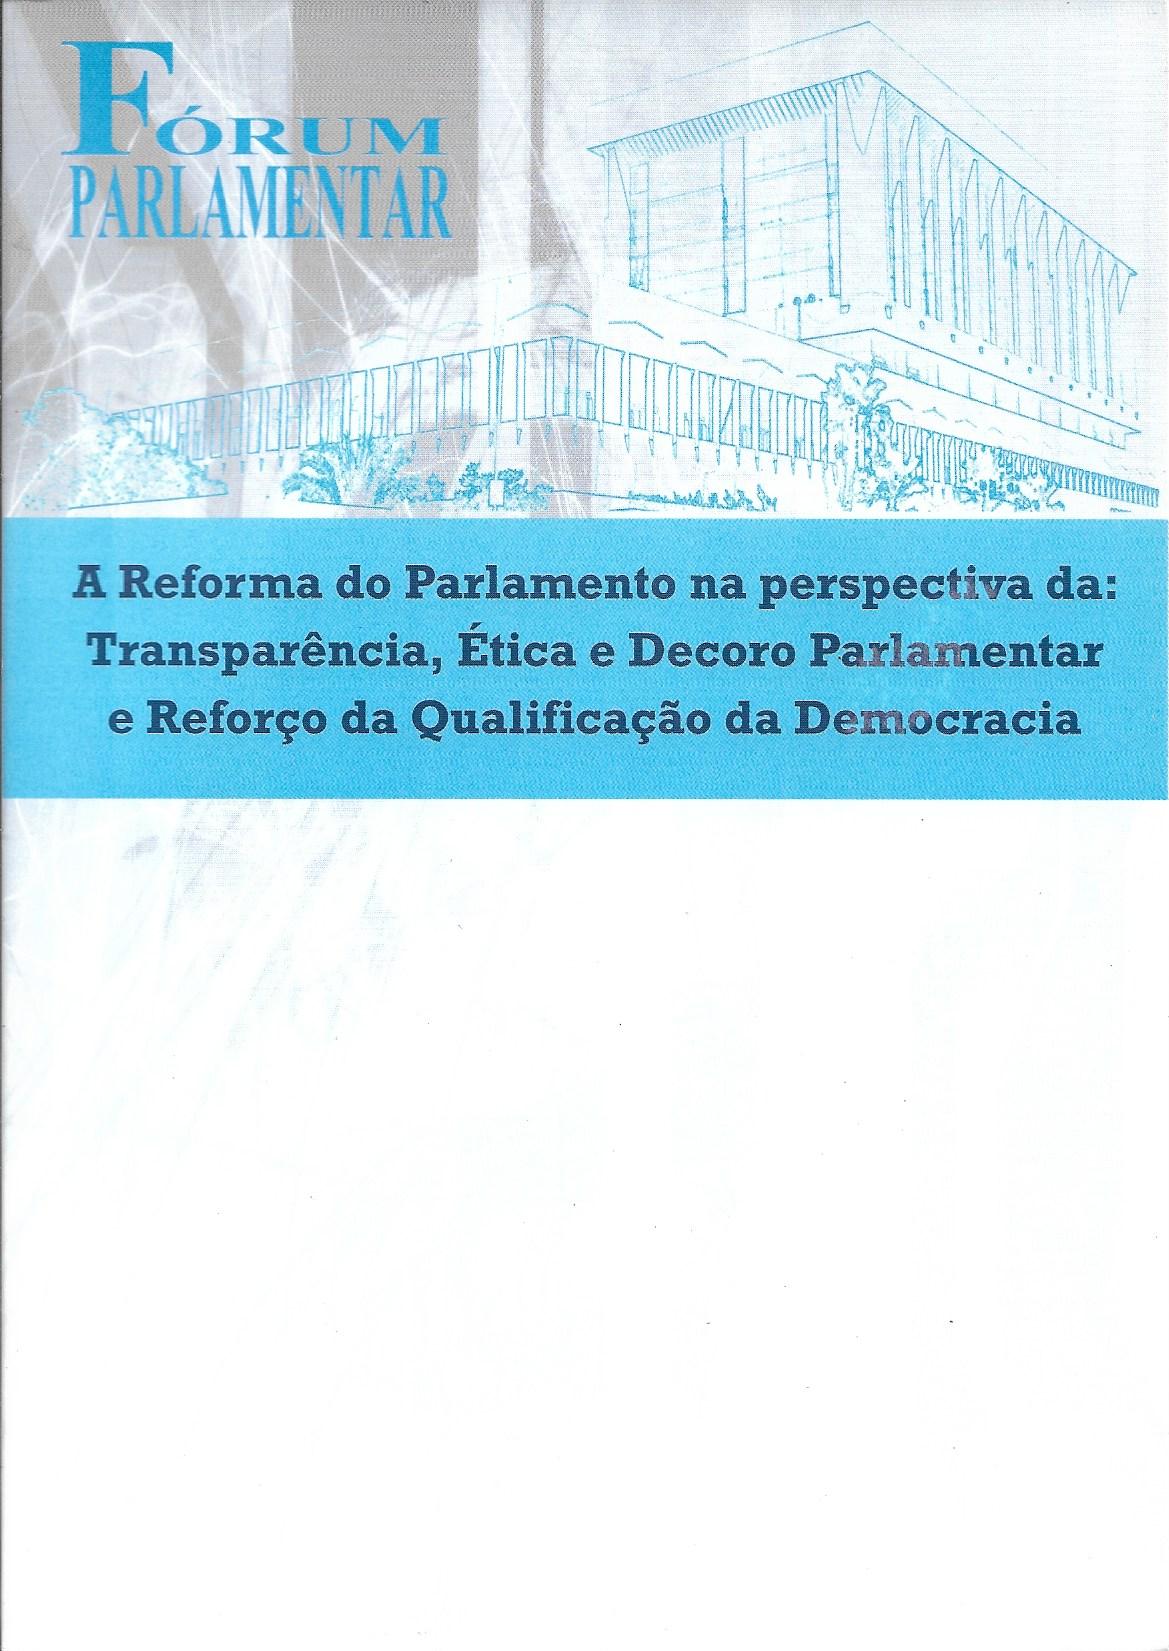 Fórum Parlamentar "A Reforma do Parlamento na Perspectiva da: Transparência, Ética e Decoro Parlamentar, e Reforço da Qualidade da Democracia"